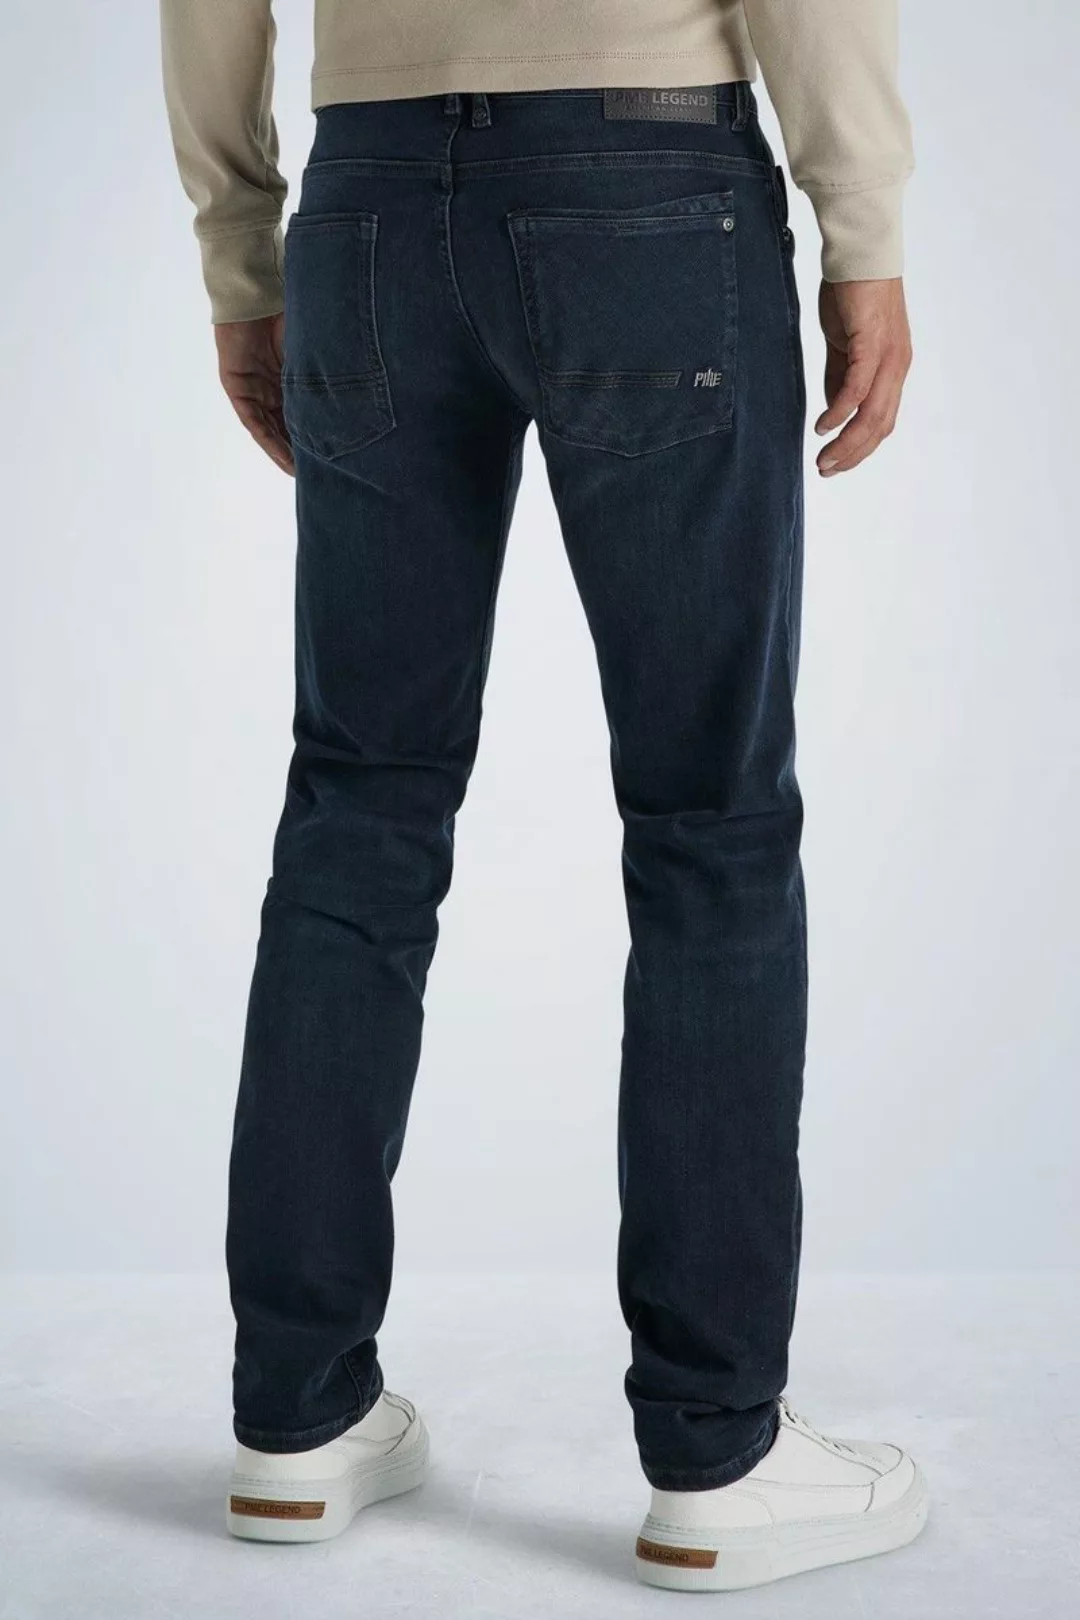 PME Legend Commander 3.0 Jeans Blau Schwarz - Größe W 35 - L 32 günstig online kaufen